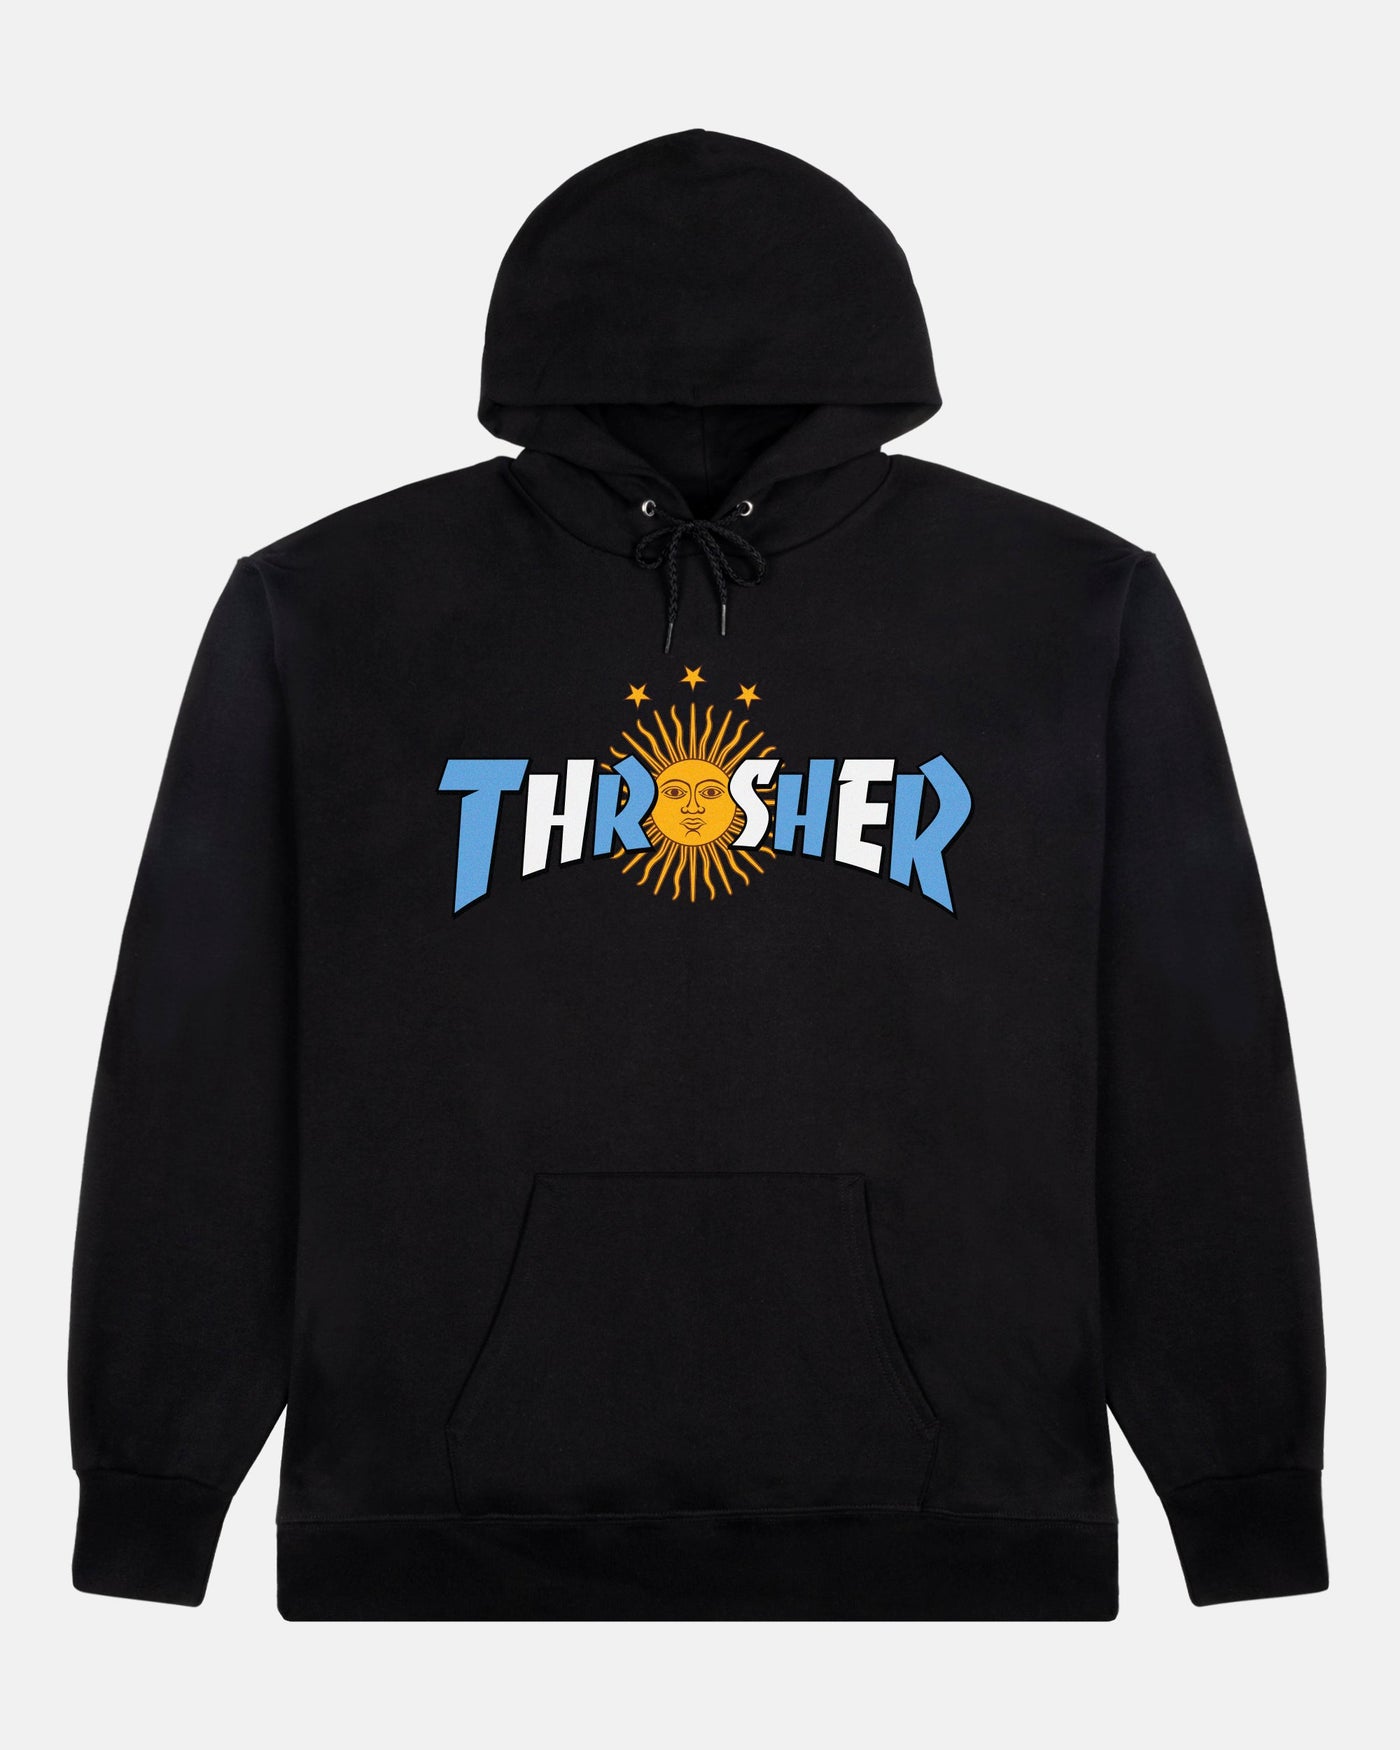 Thrasher - Poleron Canguro Argentina Estrella Black - Lo Mejor De Thrasher - Solo Por $59990! Compra Ahora En Wallride Skateshop